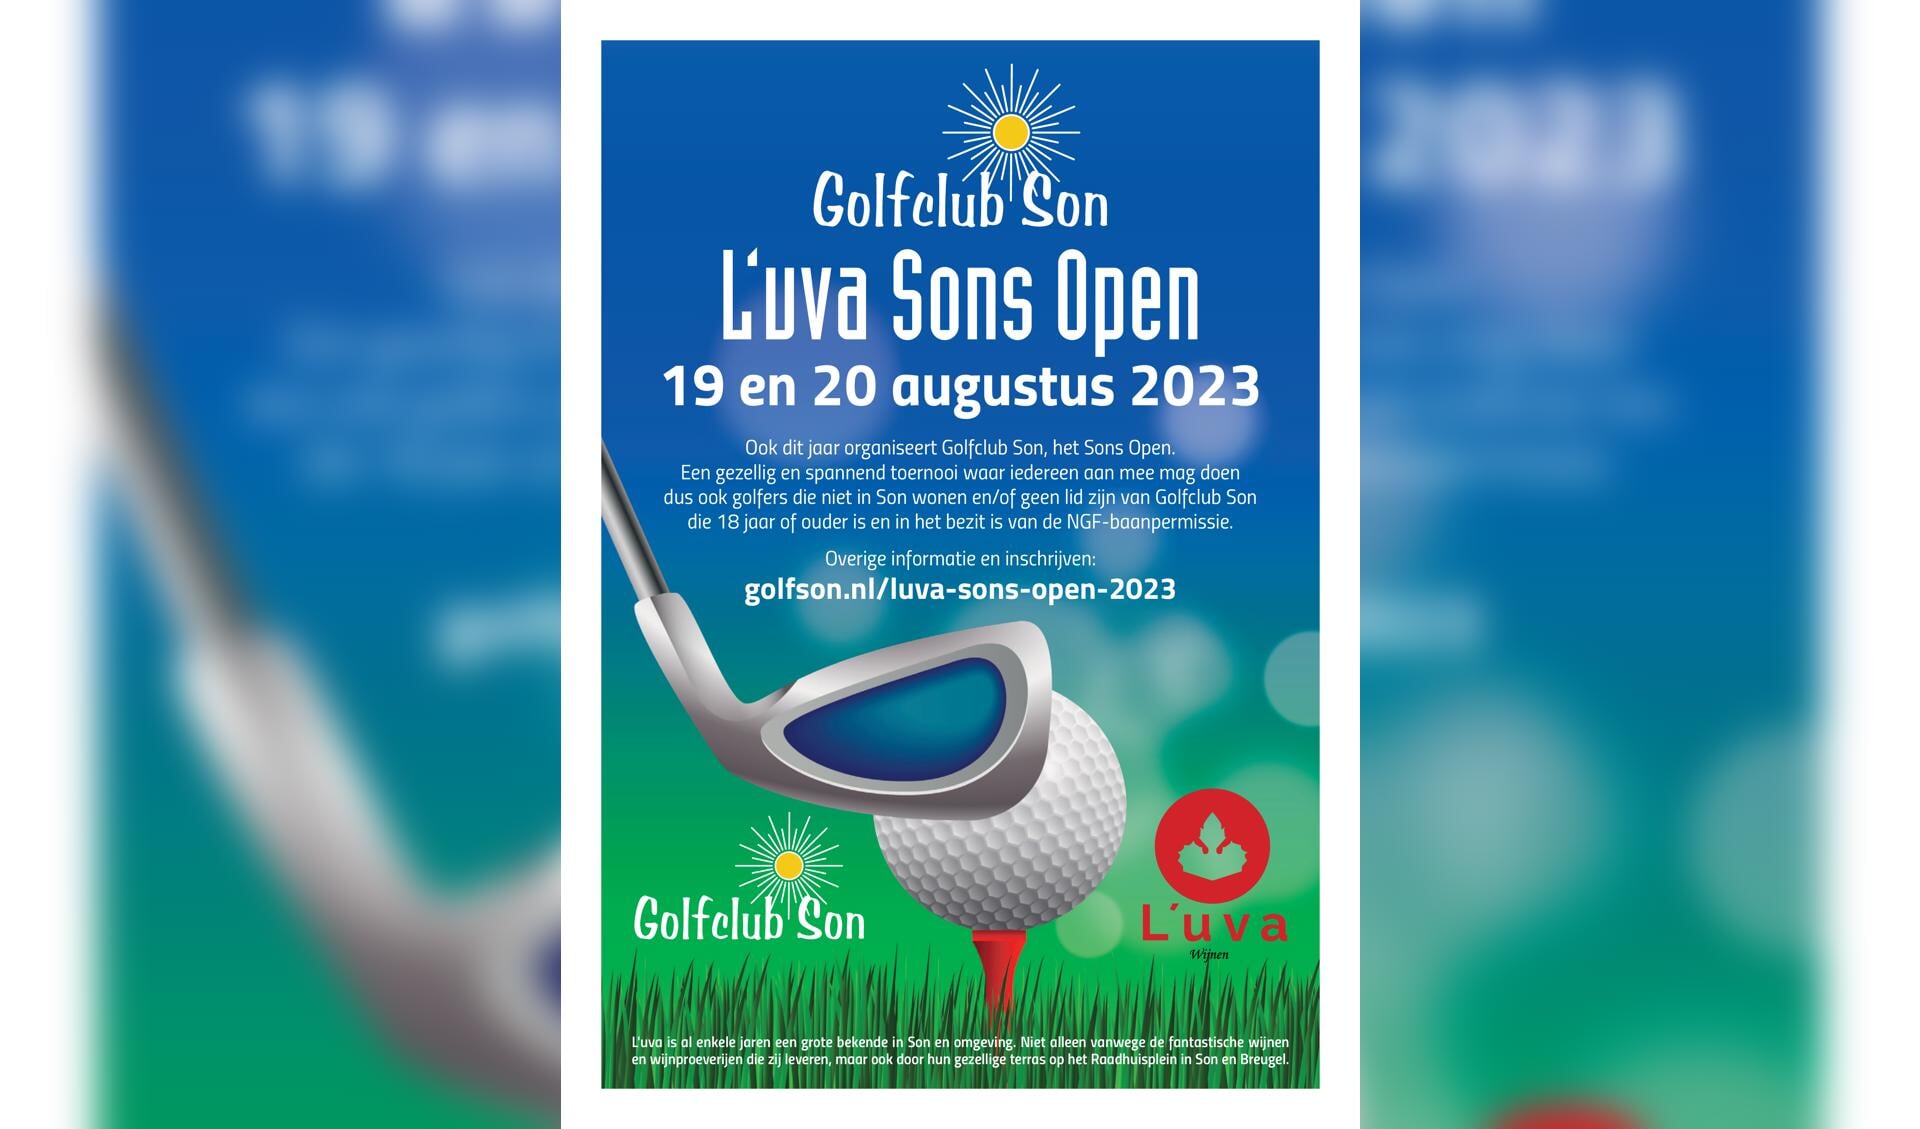 L’uva Sons Open 2023